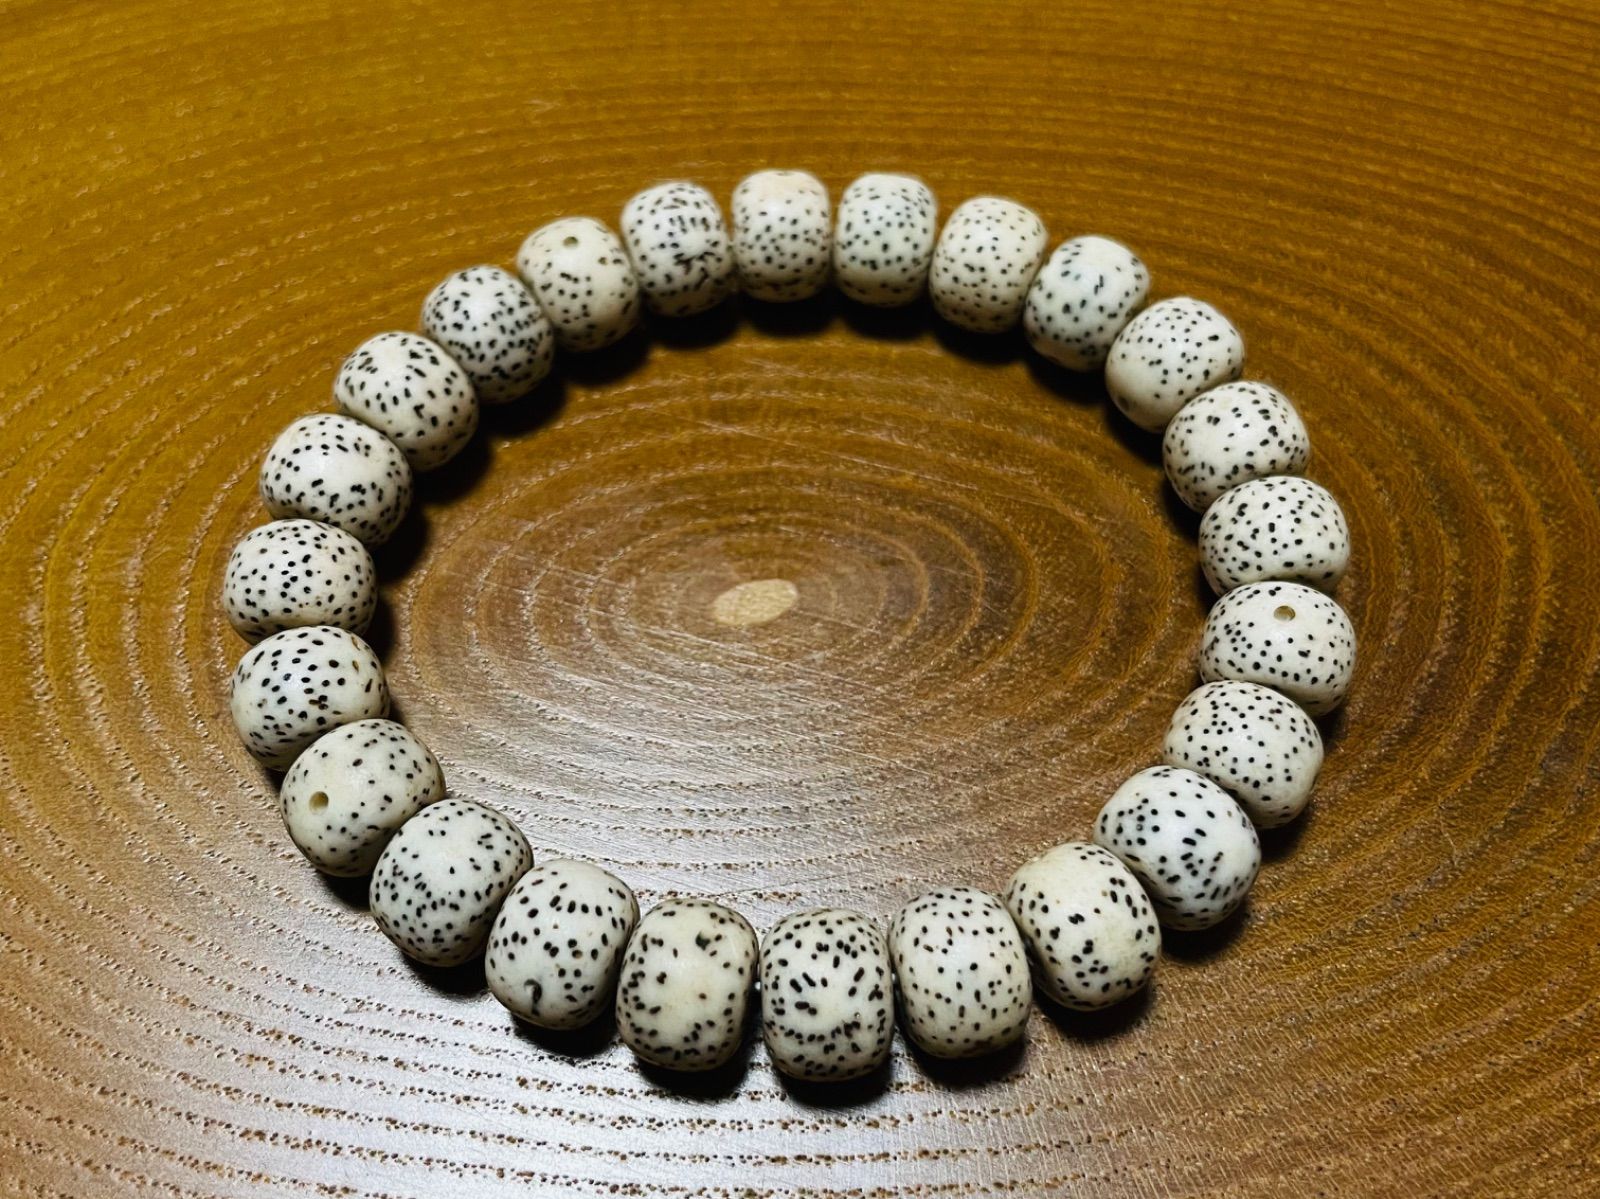 菩提树の実 星月菩提 数珠 腕輪念珠 ブレスレット 御守り - 自然の宝物